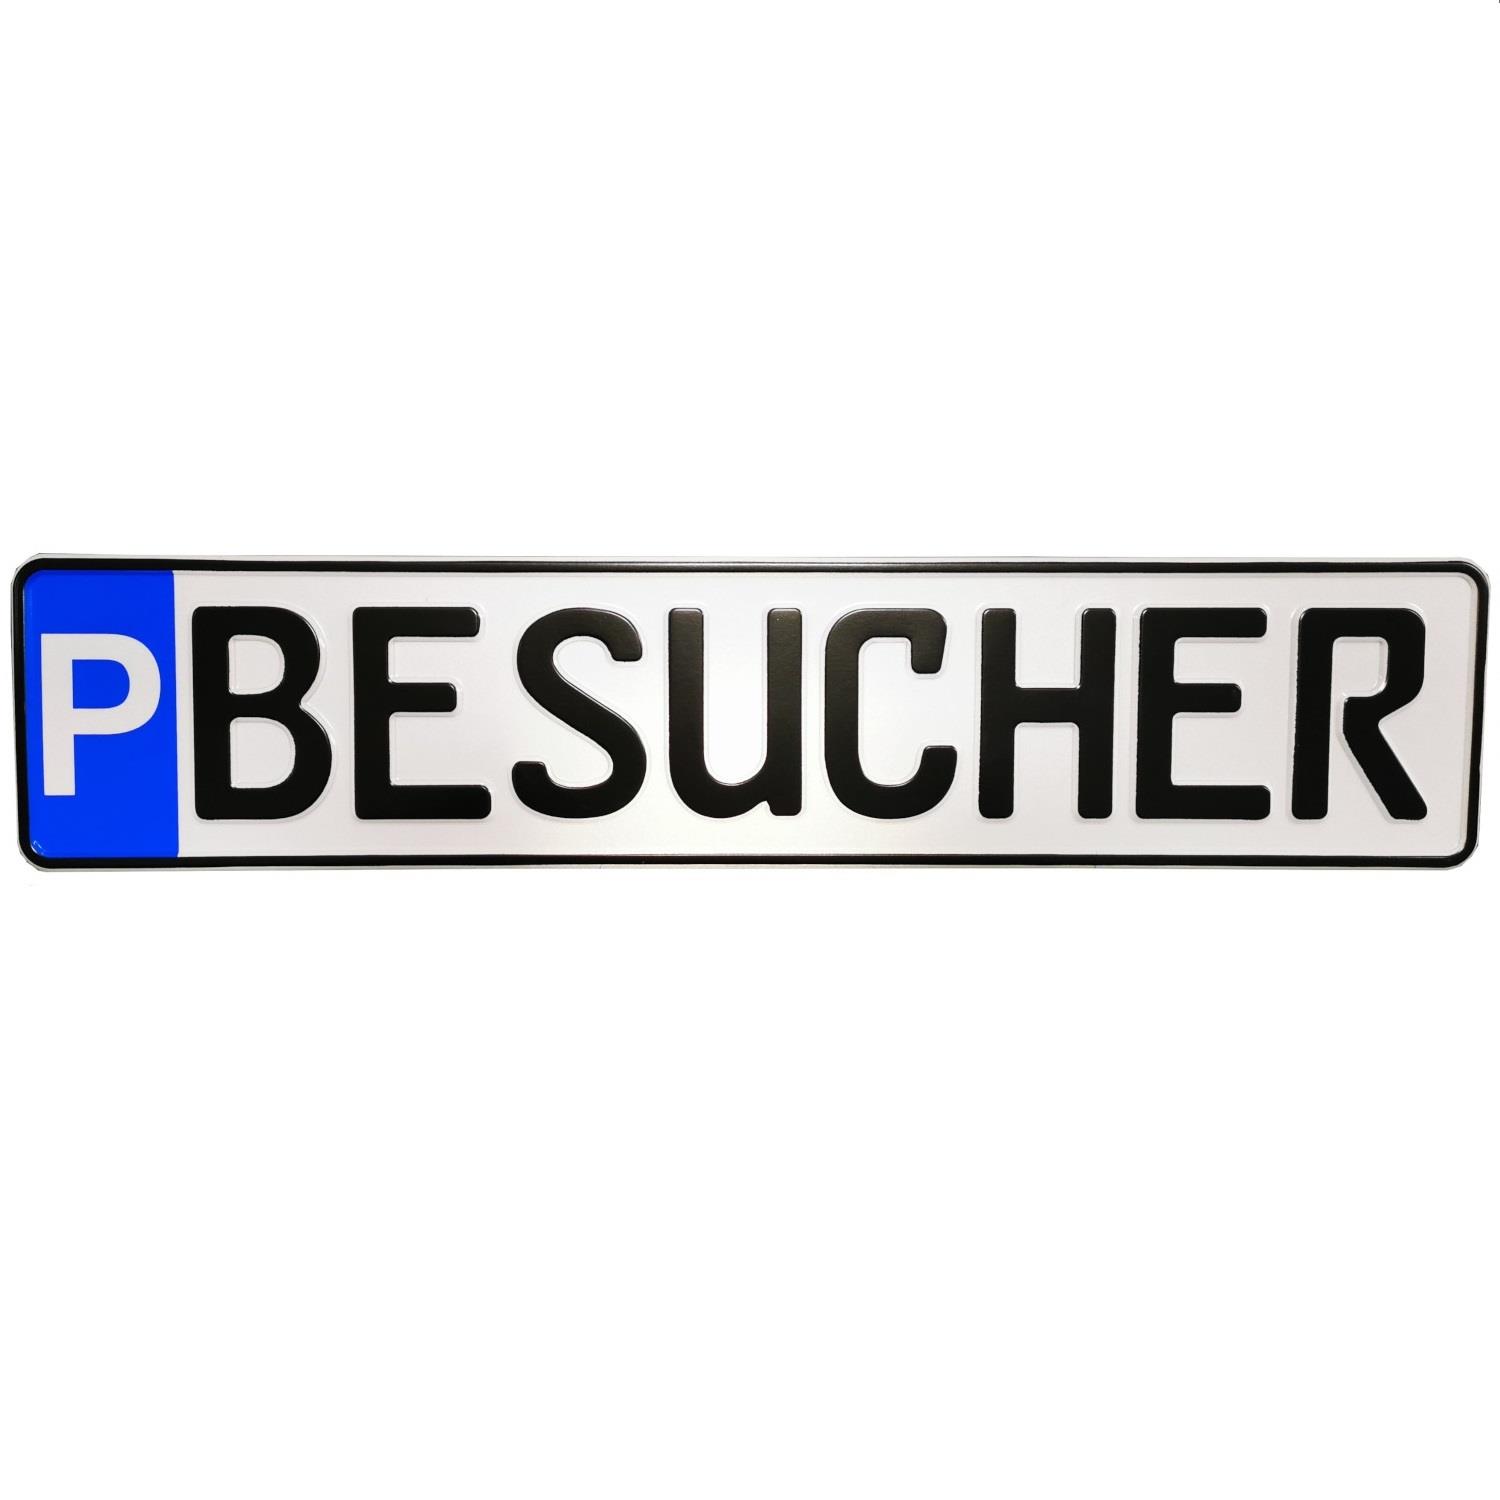 Schild zur Parkplatzkennzeichnung "P-BESUCHER"- KFZ Normgröße, Kleinschrift, geprägt.